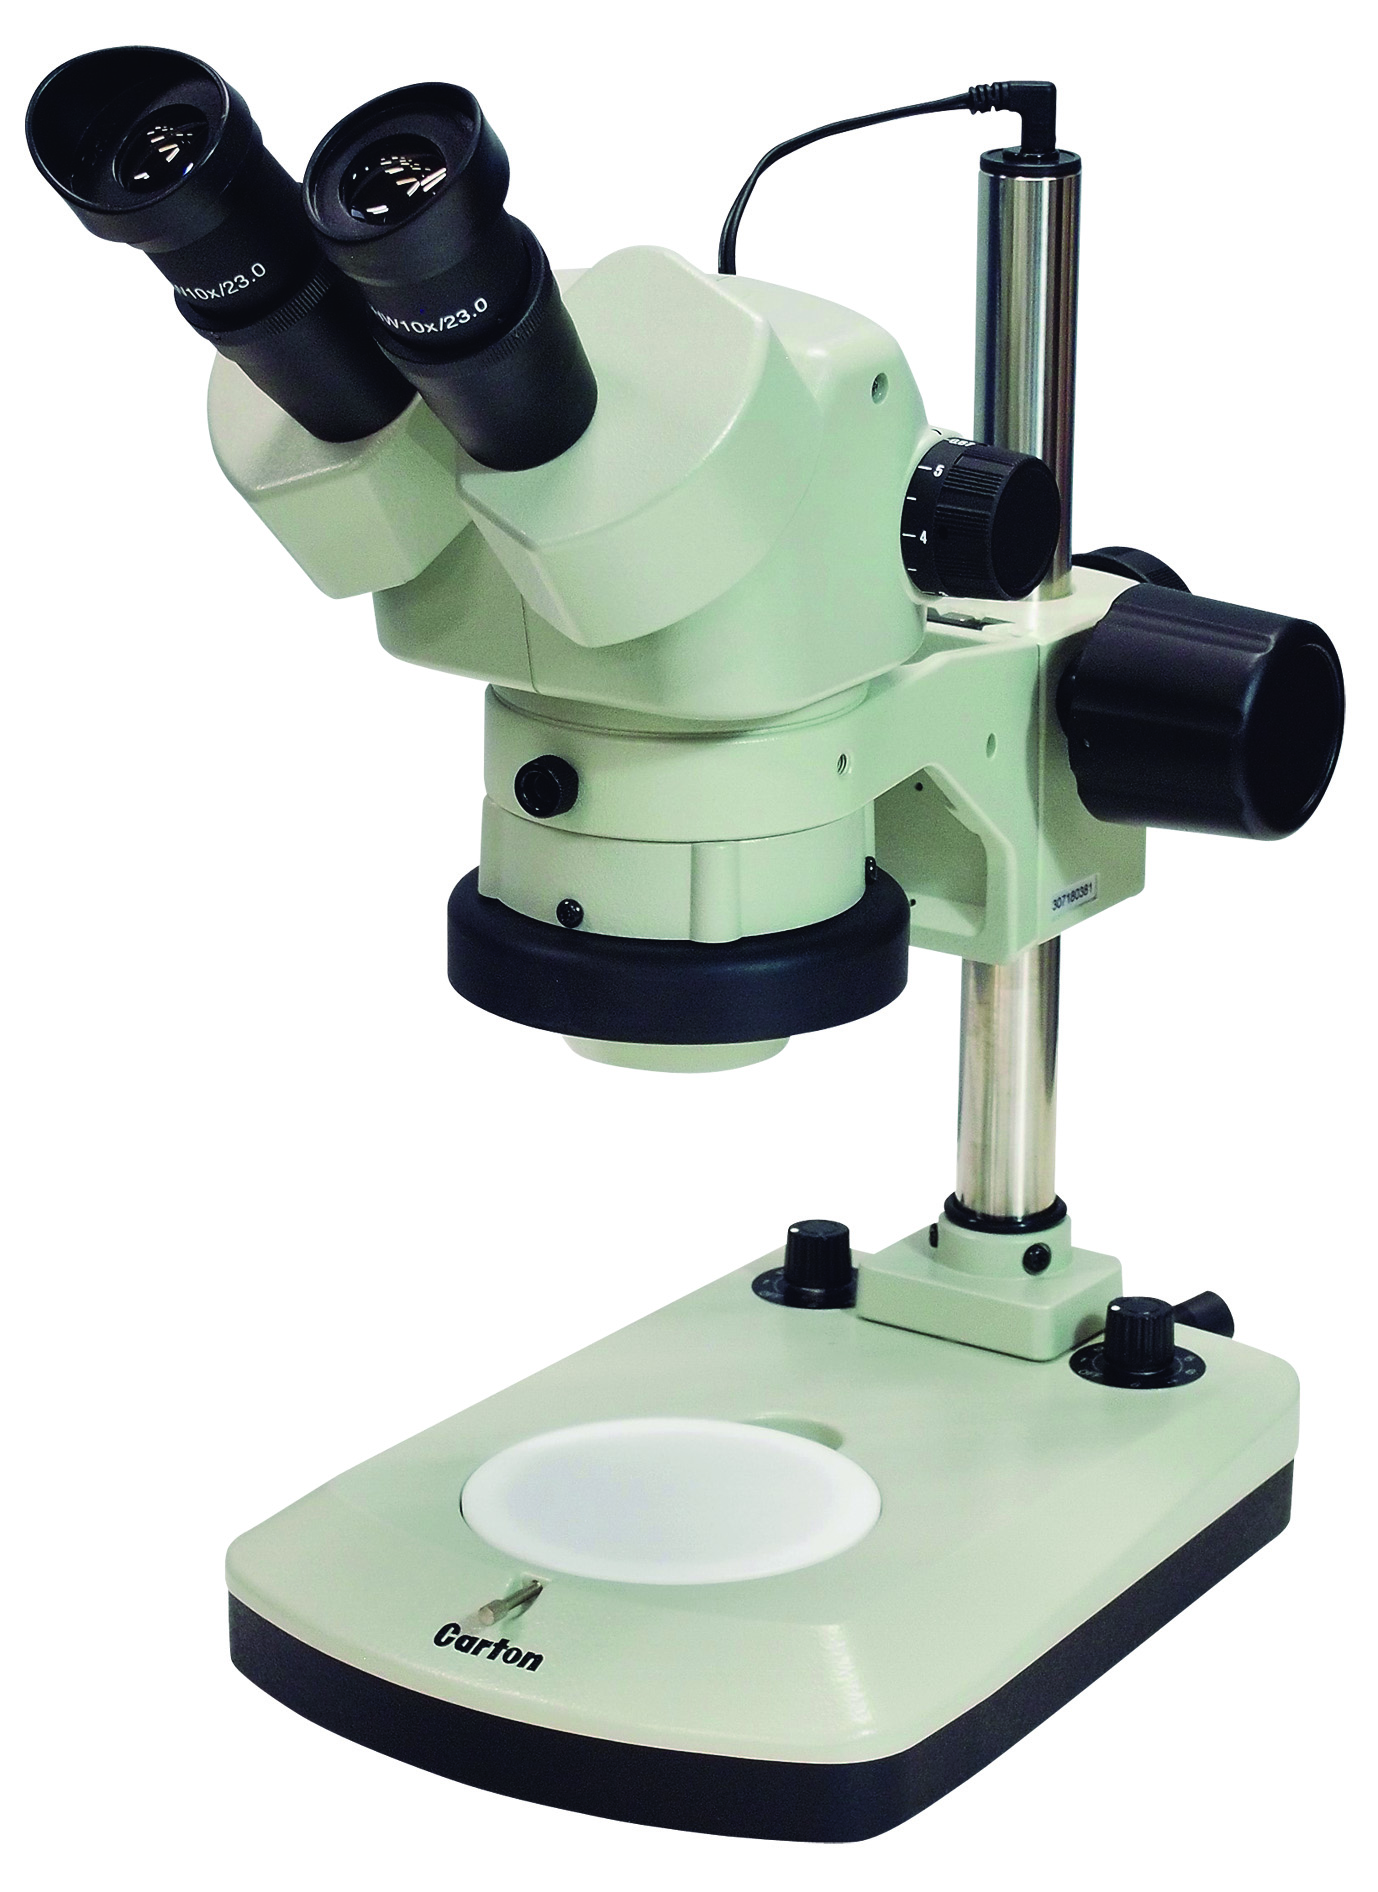 カートン光学 ズームシステム実体顕微鏡<双眼式> 落射/透過白色LED調光照明付